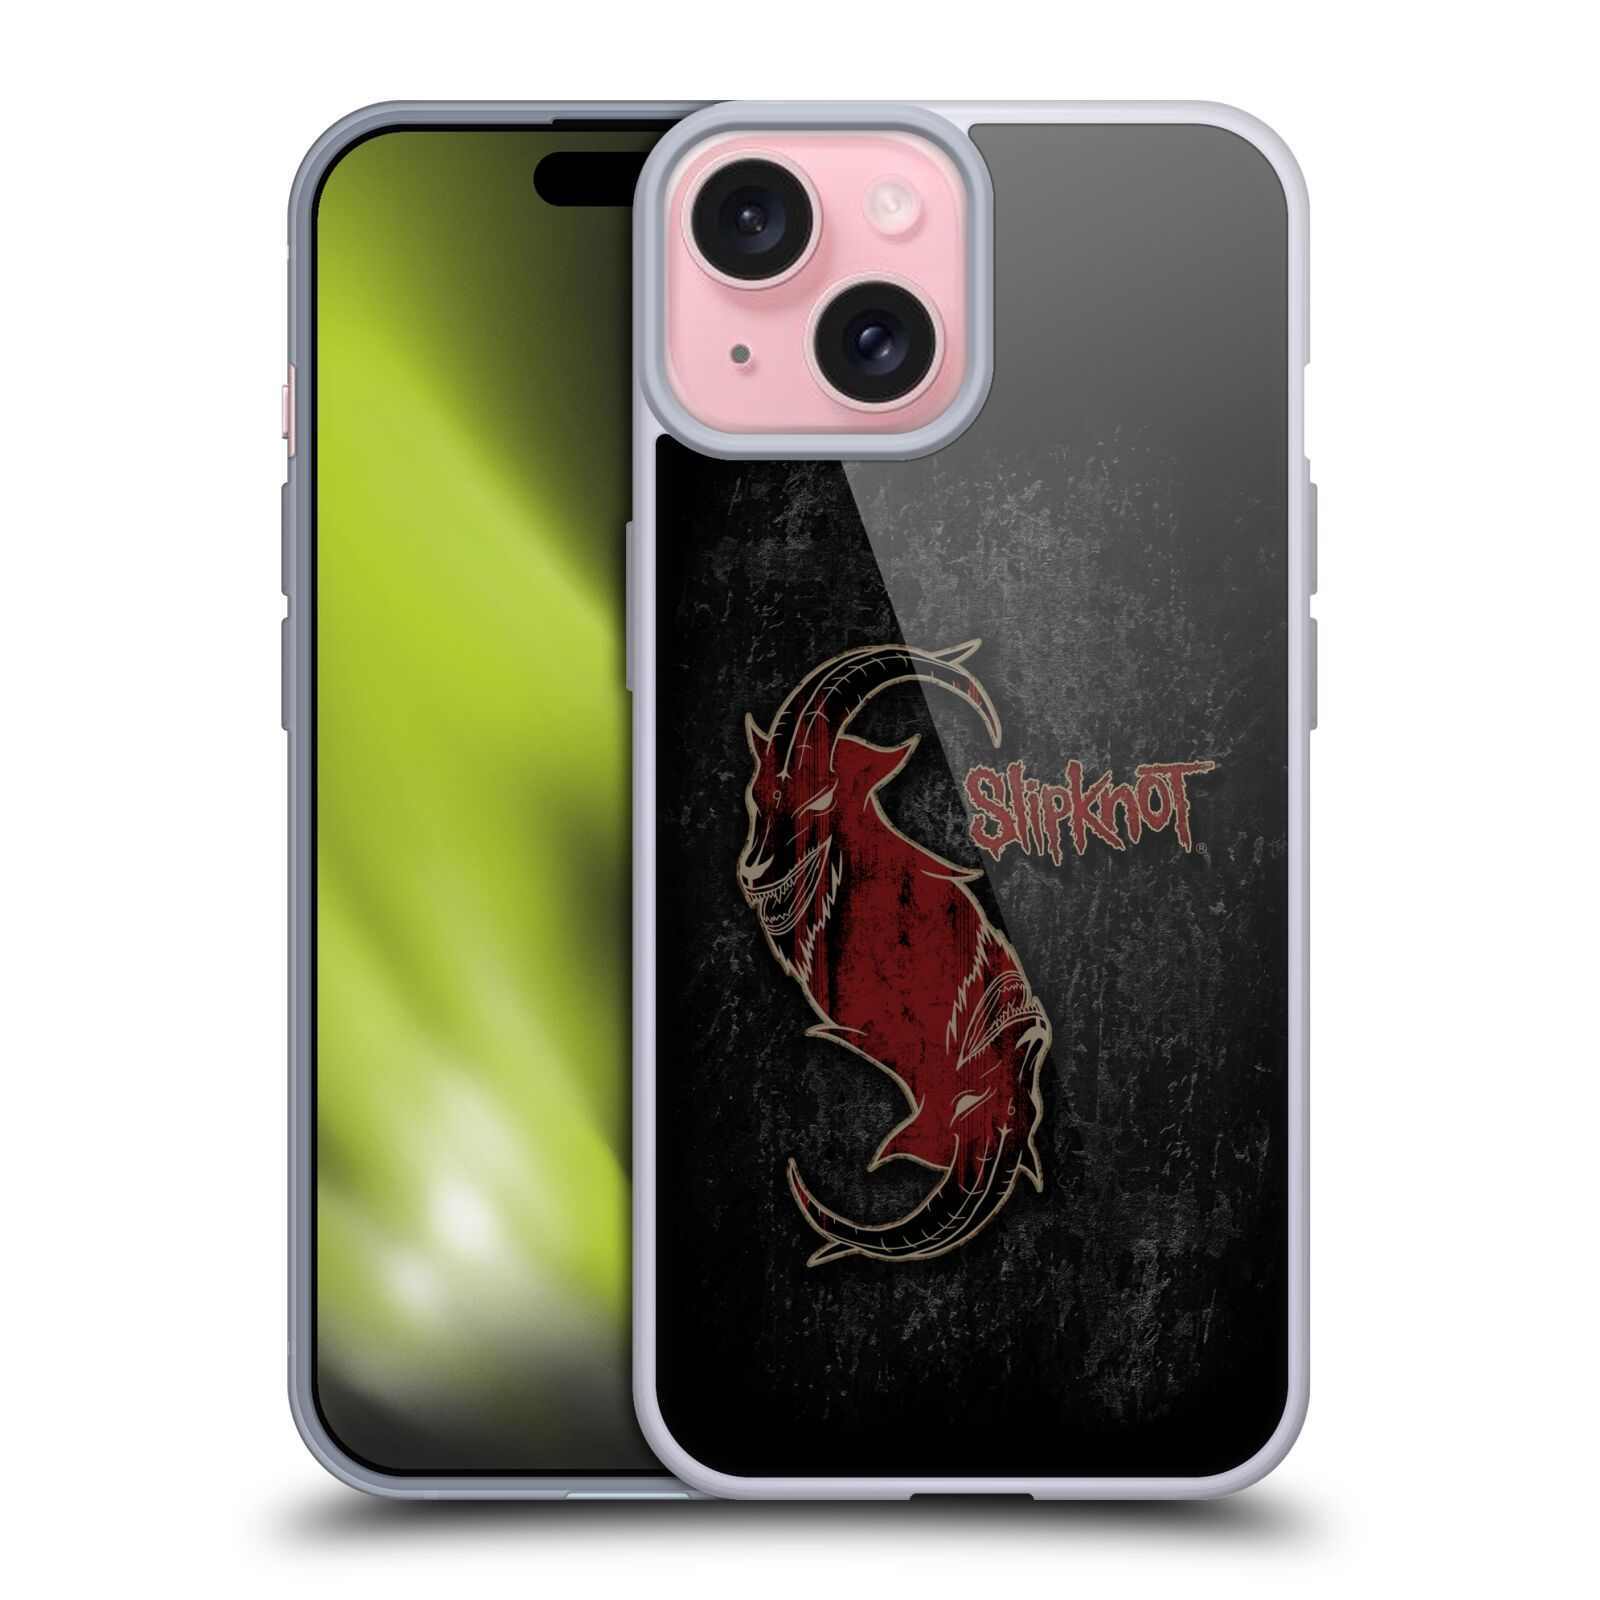 Silikonové lesklé pouzdro na mobil Apple iPhone 15 - Head Case - Slipknot - Rudý kozel (Silikonový lesklý kryt, obal, pouzdro na mobilní telefon Apple iPhone 15 s motivem Slipknot - Rudý kozel)